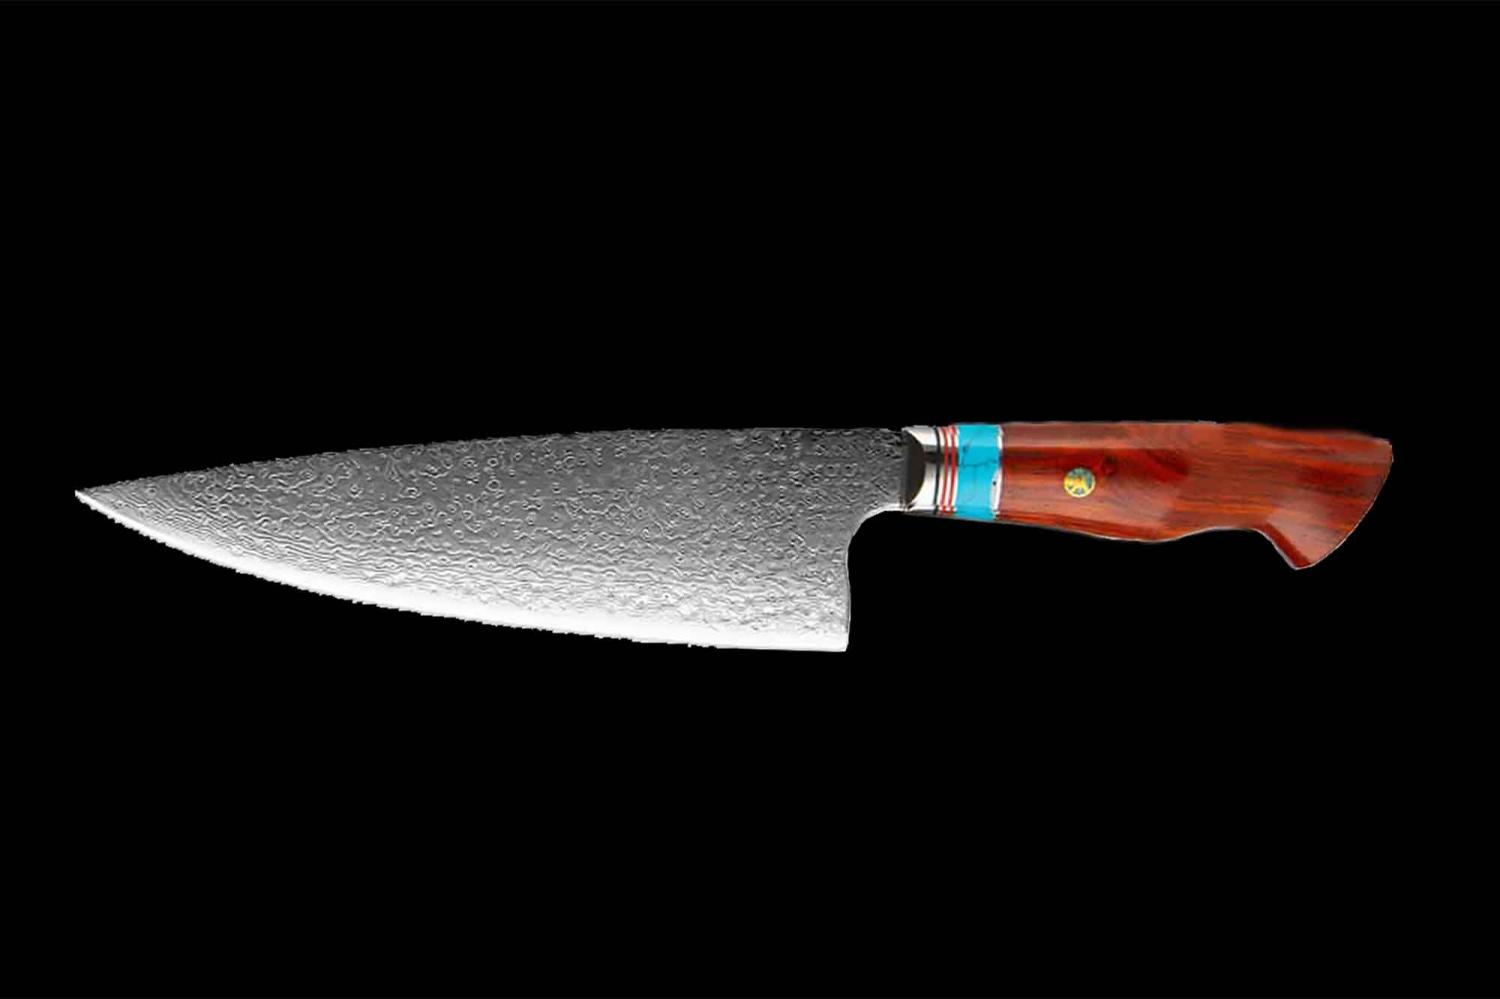 Ihr neues Lieblingsmesser Damast Edelstahl Kochmesser und Universalmesser Damascus Butcher Knives Sharp professional Chef knife Cleaver Bild 1